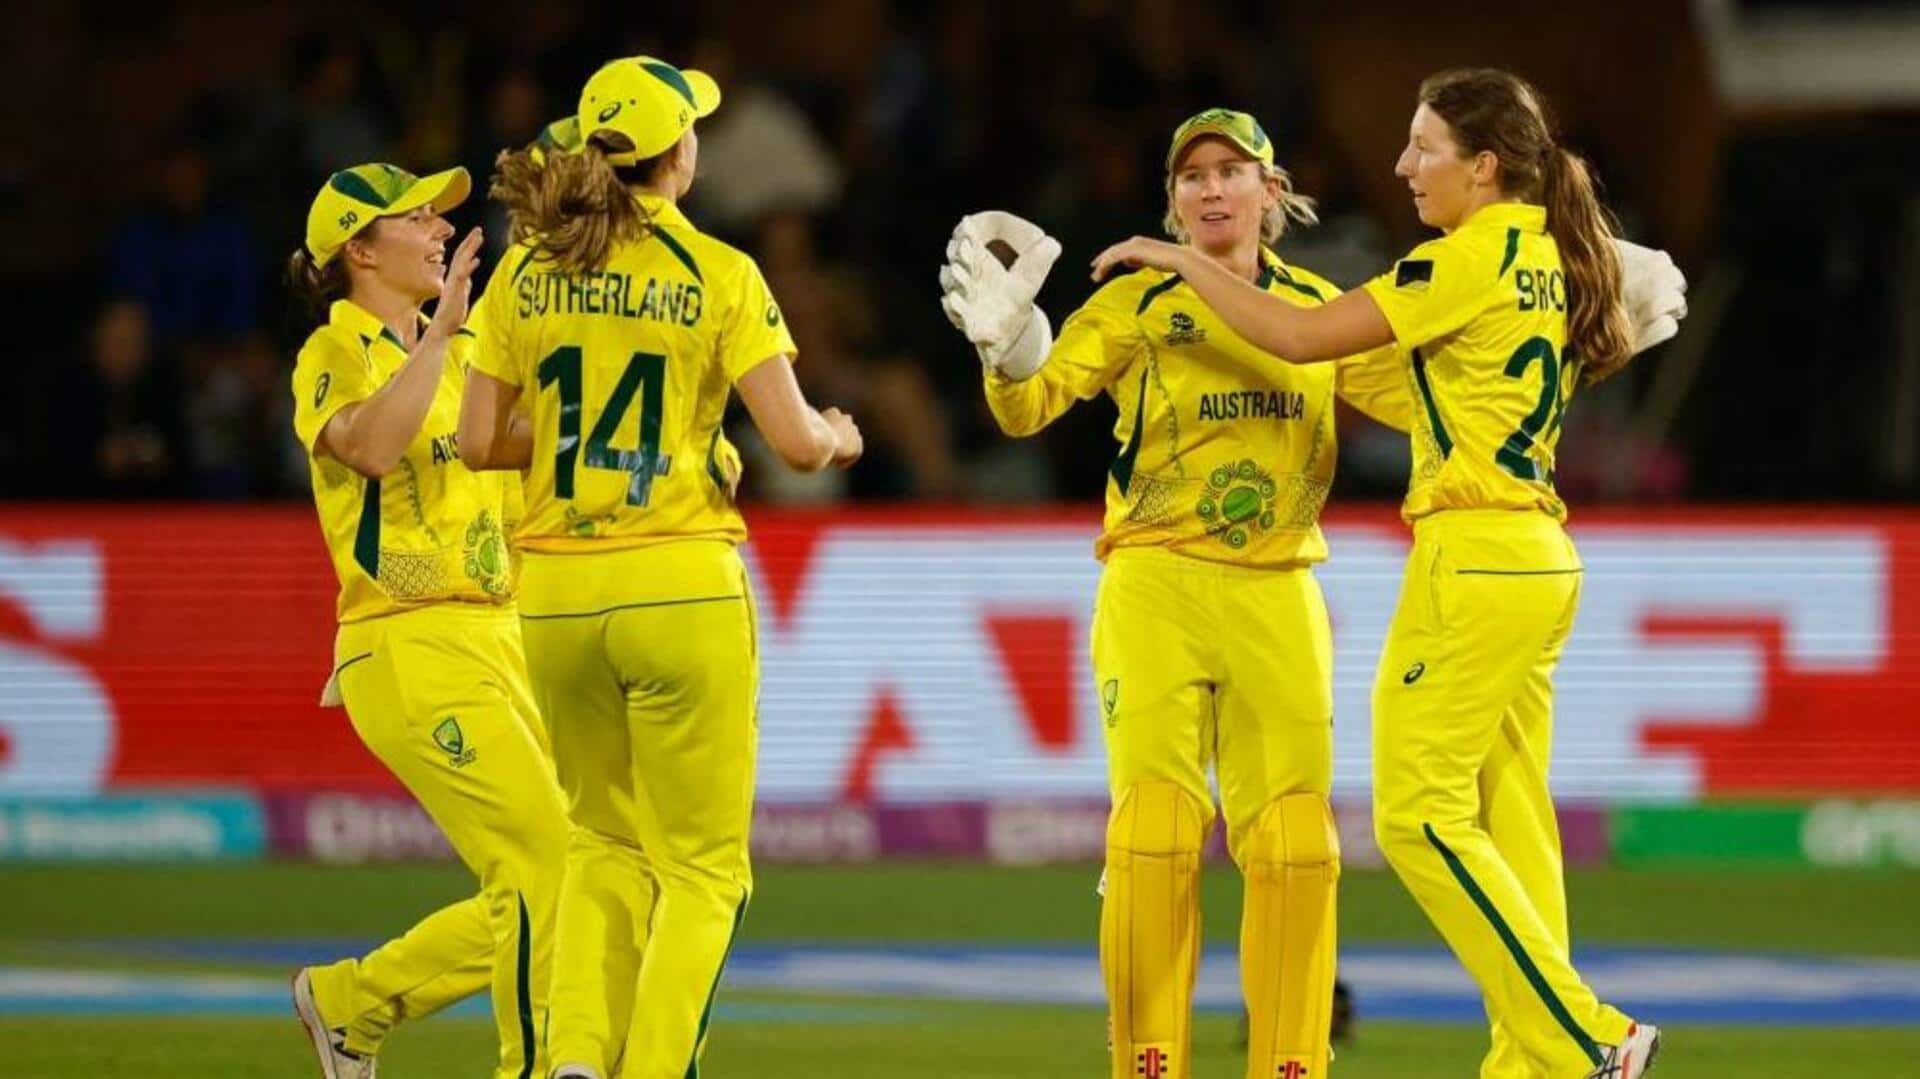 महिला टी-20 विश्व कप: दक्षिण अफ्रीका को हराकर सेमीफाइनल में पहुंची ऑस्ट्रेलियाई टीम, ये बने रिकॉर्ड्स 